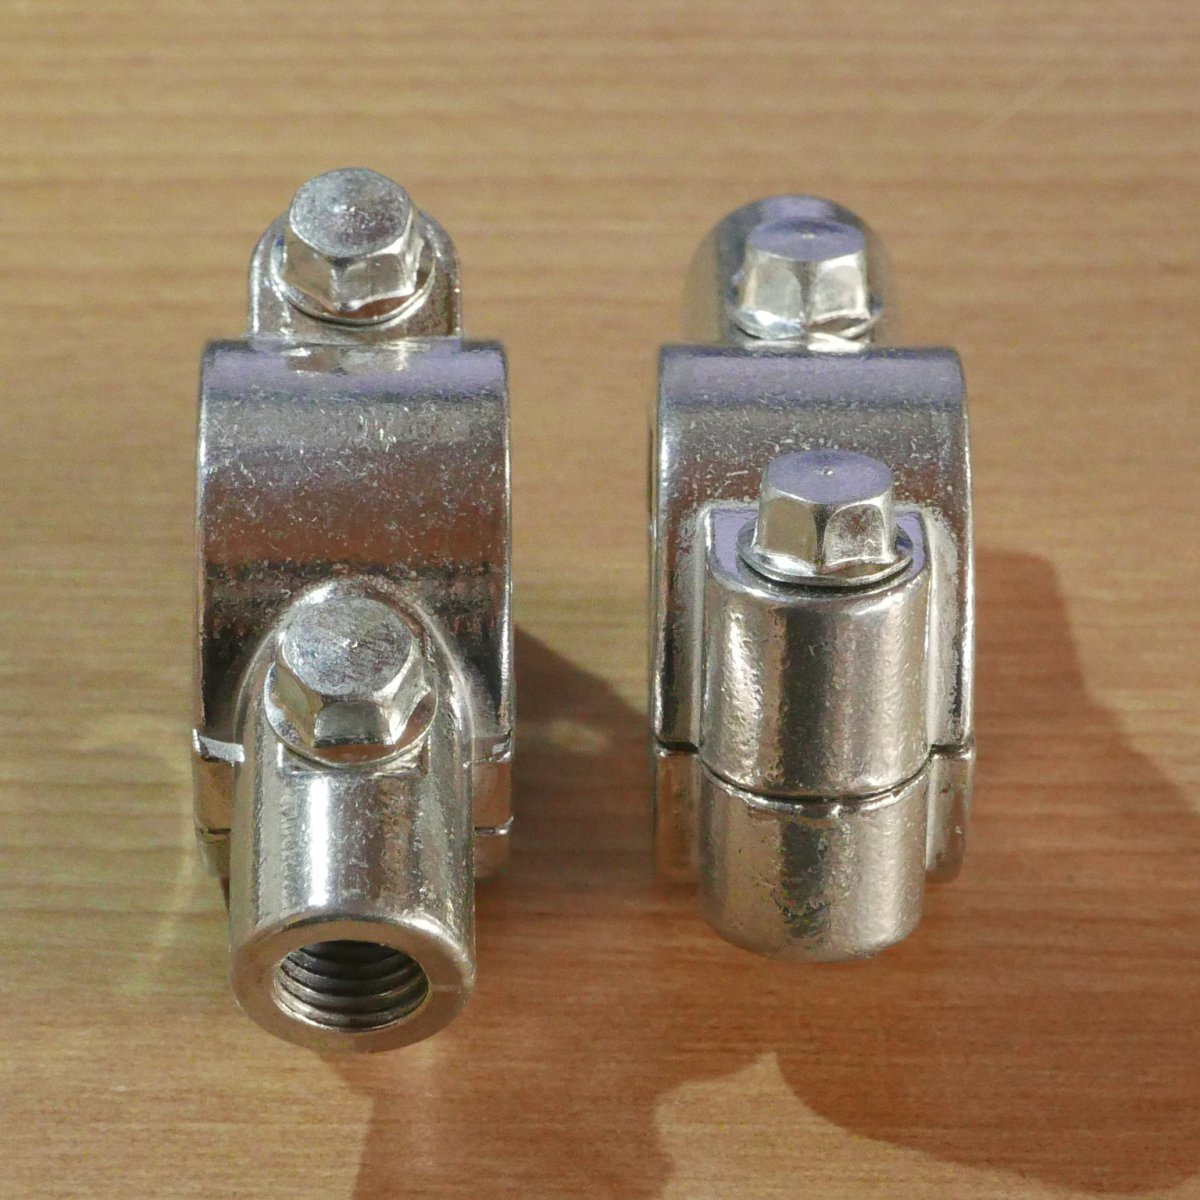 1インチ(25mm)ハンドル用 M10正ネジ対応 無地 アルミ製ミラークランプ 2個セット (シルバー ミラーホルダーマウント)_画像2